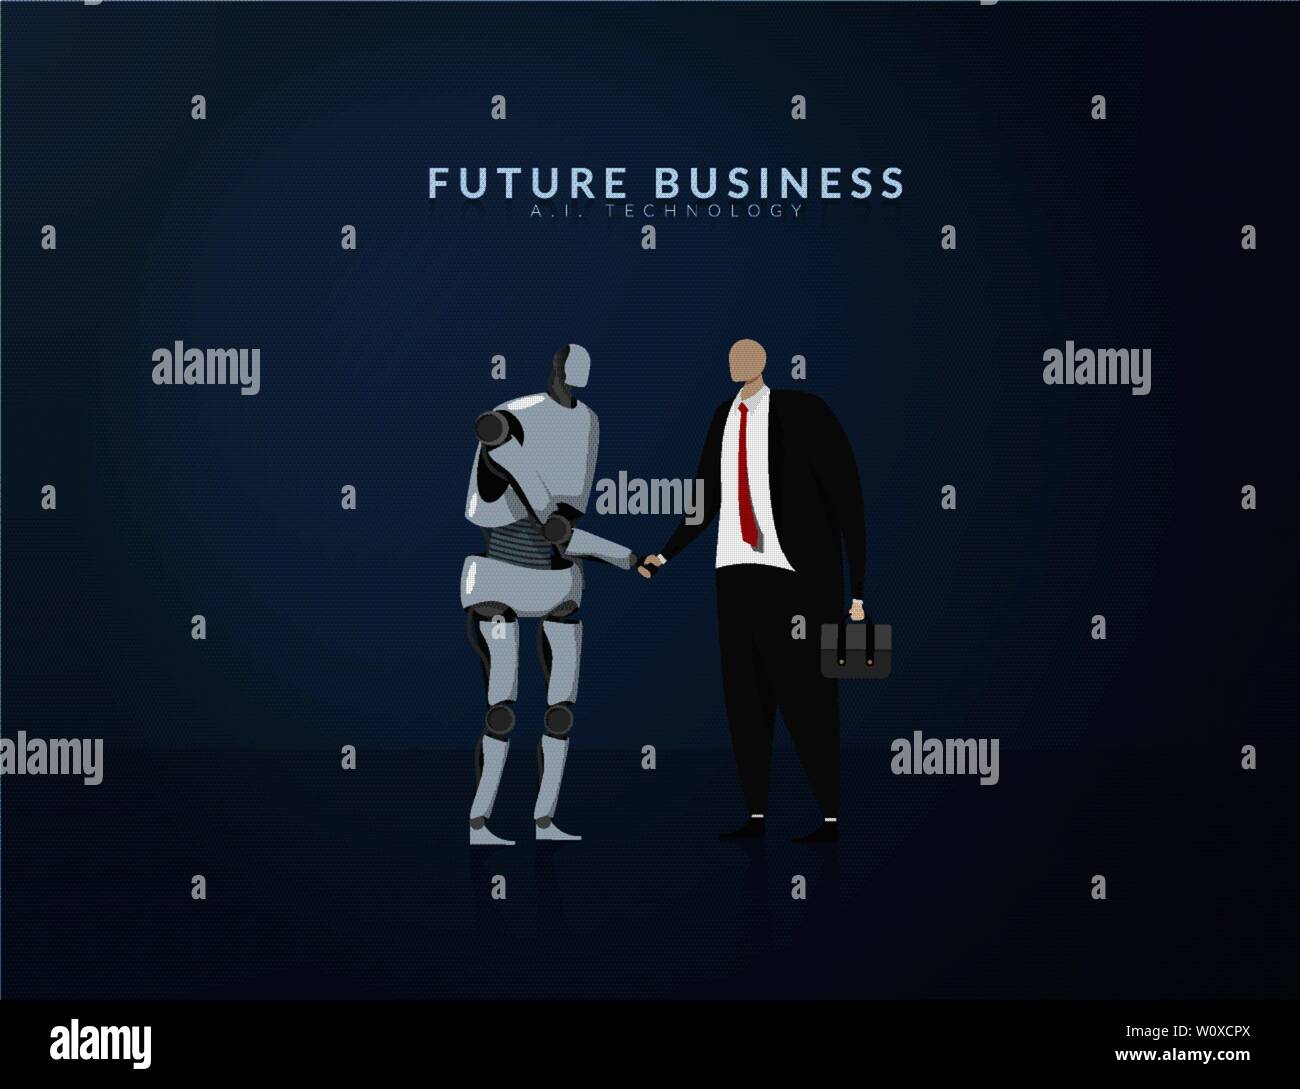 Umano e ai lavorando insieme , futuro business , tecnologia e innovazione concetto. AI o di intelligenza artificiale agitando la mano per la cooperazione in bus Illustrazione Vettoriale